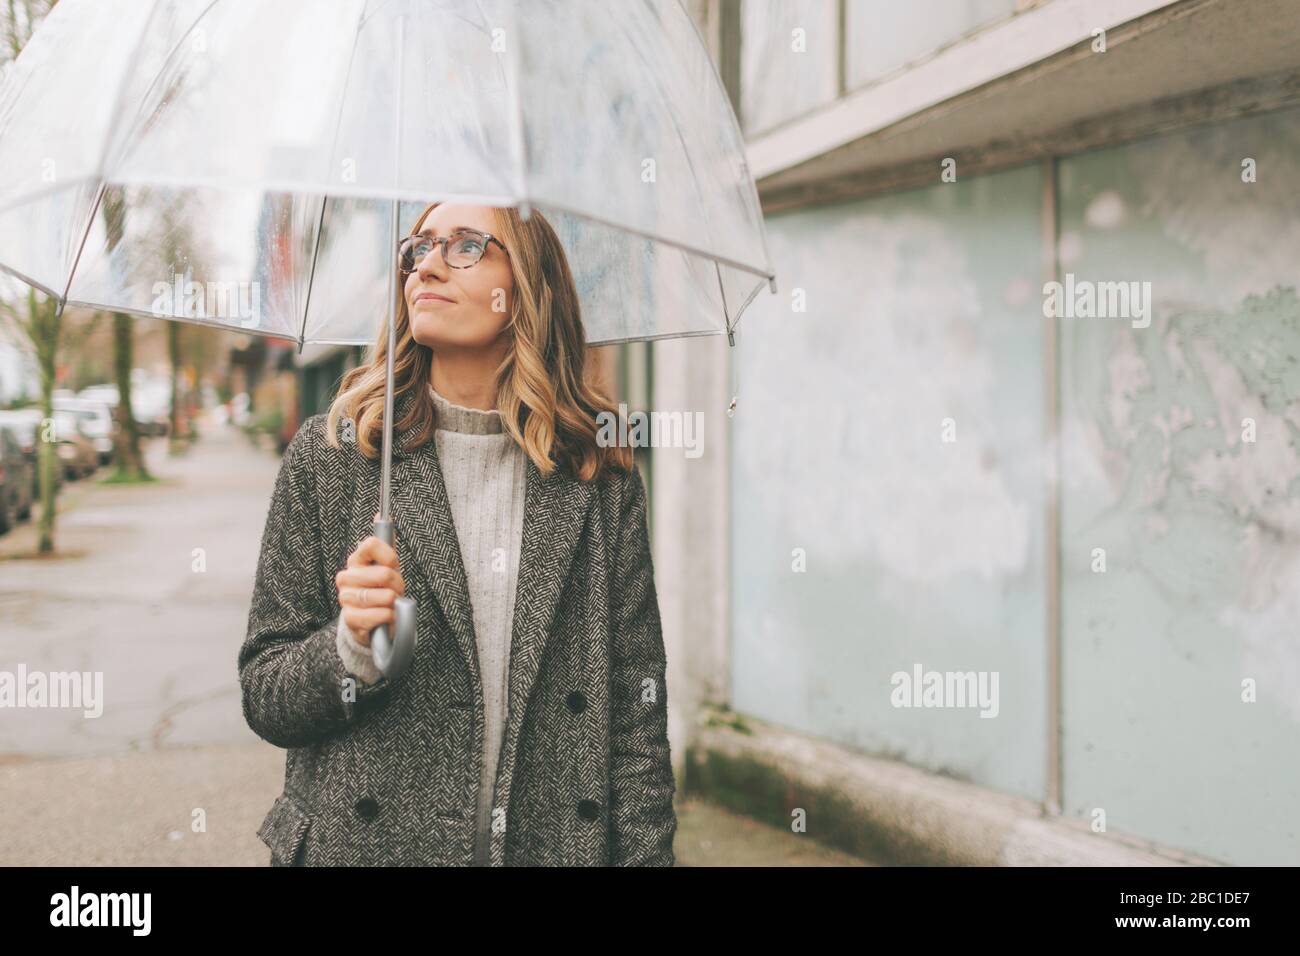 Paraguas De Lluvia Fotos e Imágenes de stock - Alamy